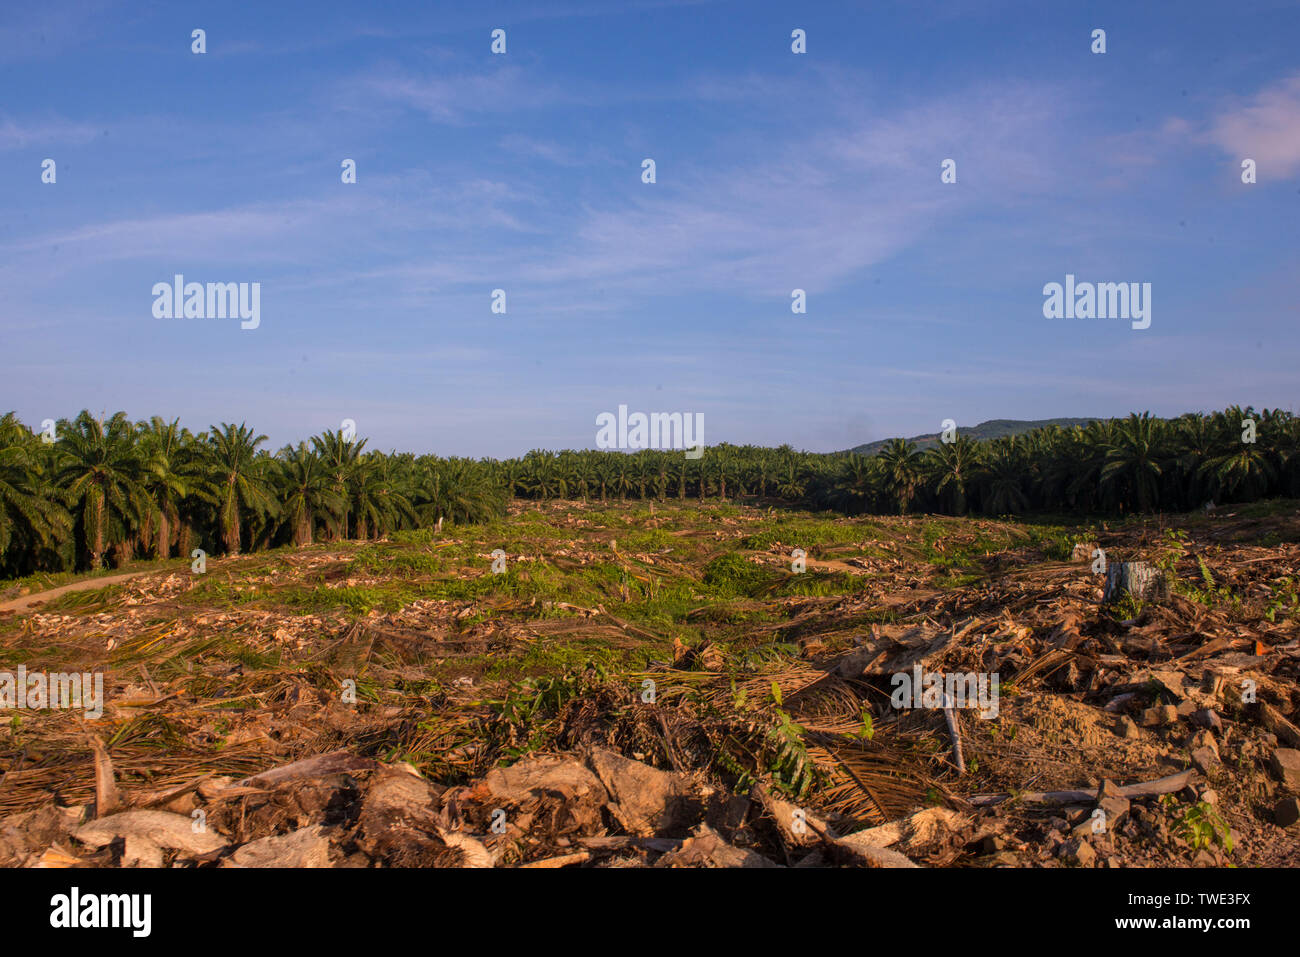 Oil Palm plantation, near Tawau, Sabah, Borneo, East Malaysia. Stock Photo